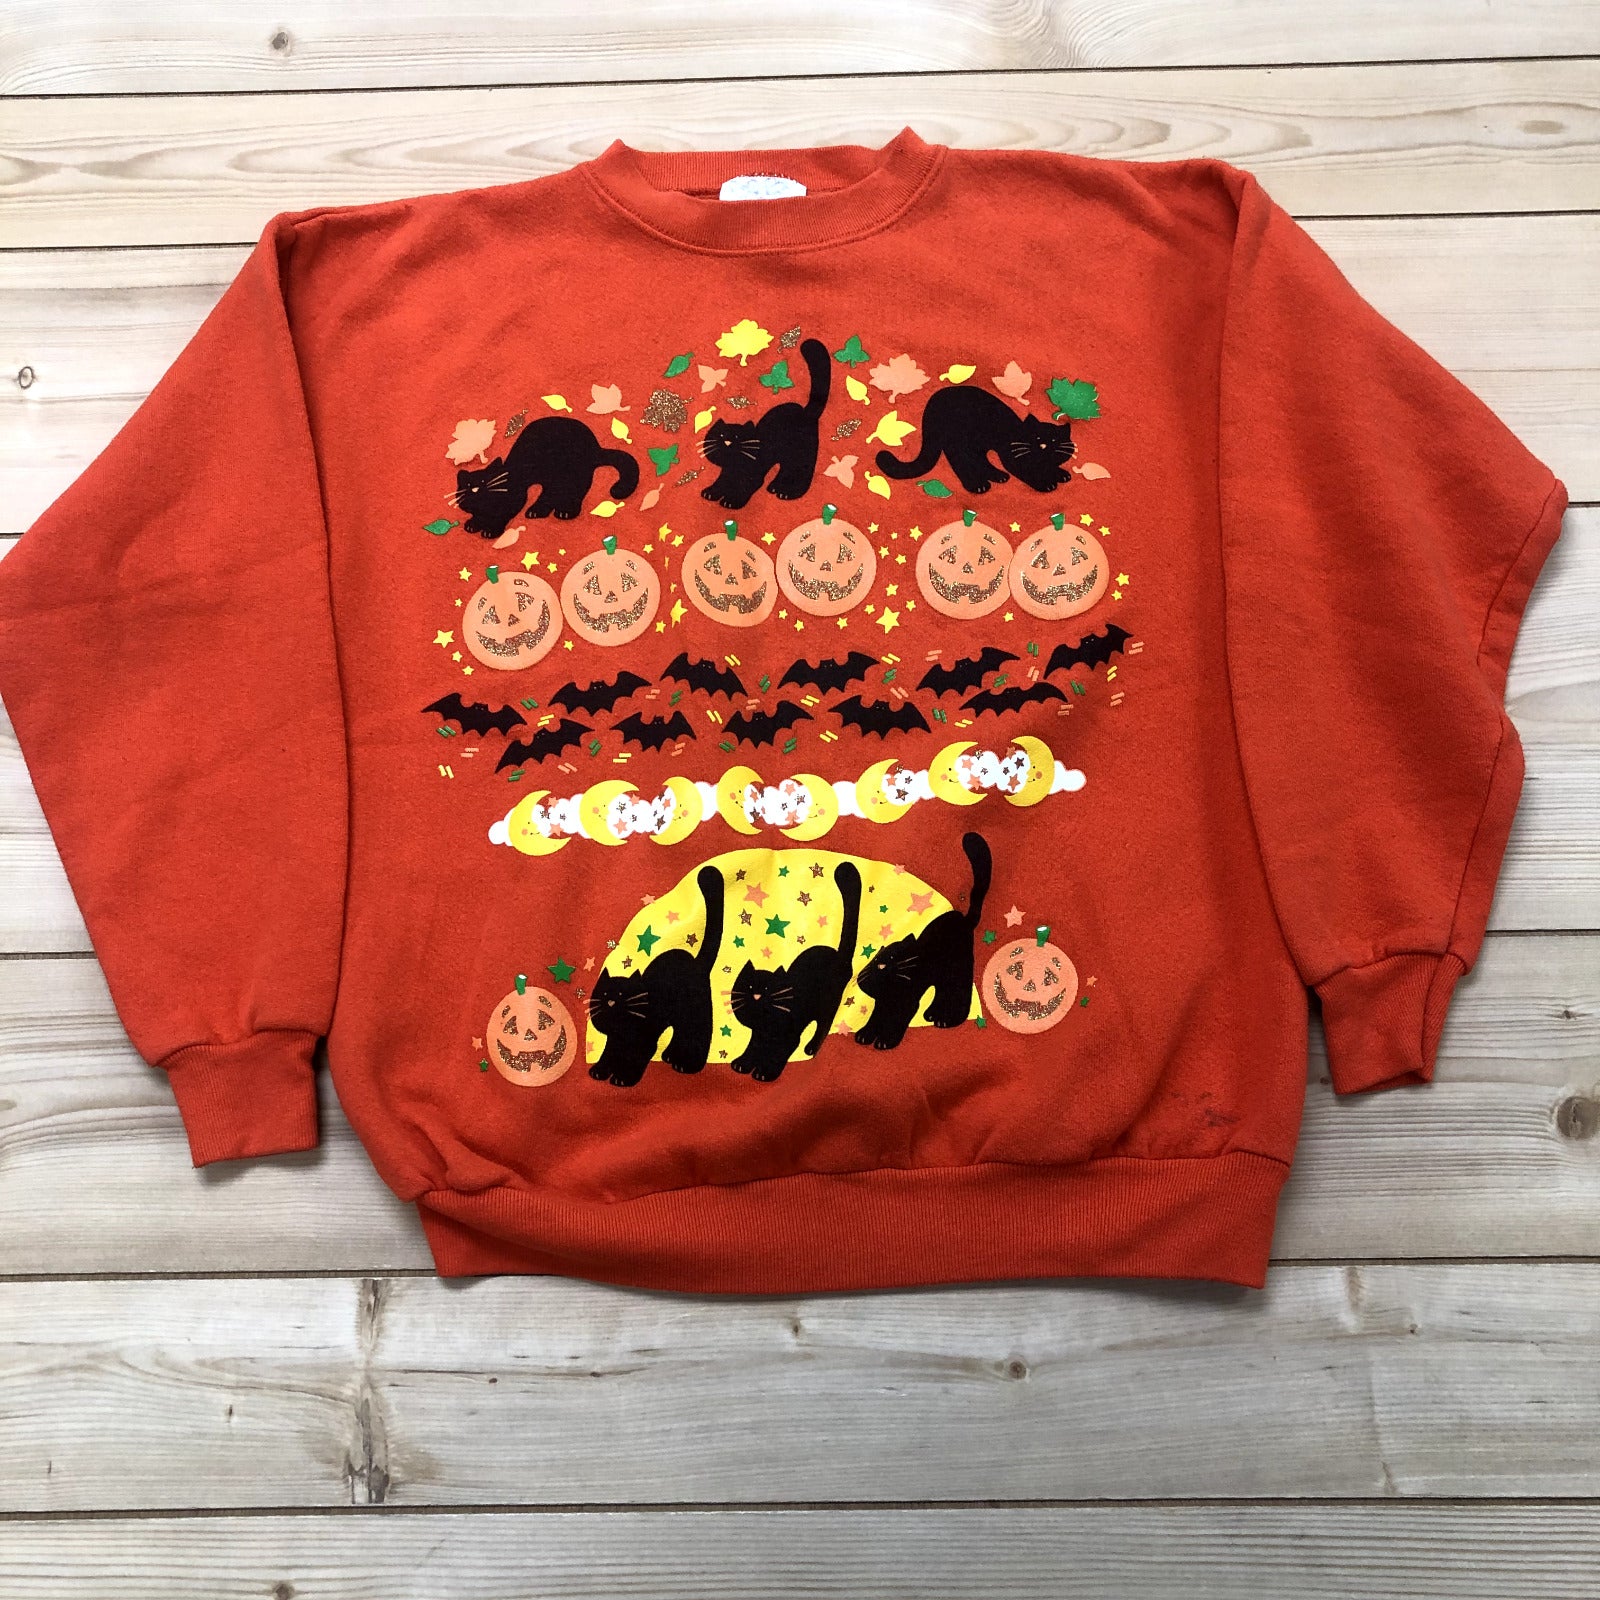 Vintage Peanuts Orange Halloween Long Sleeve Sweatshirt Adult Size Large USA